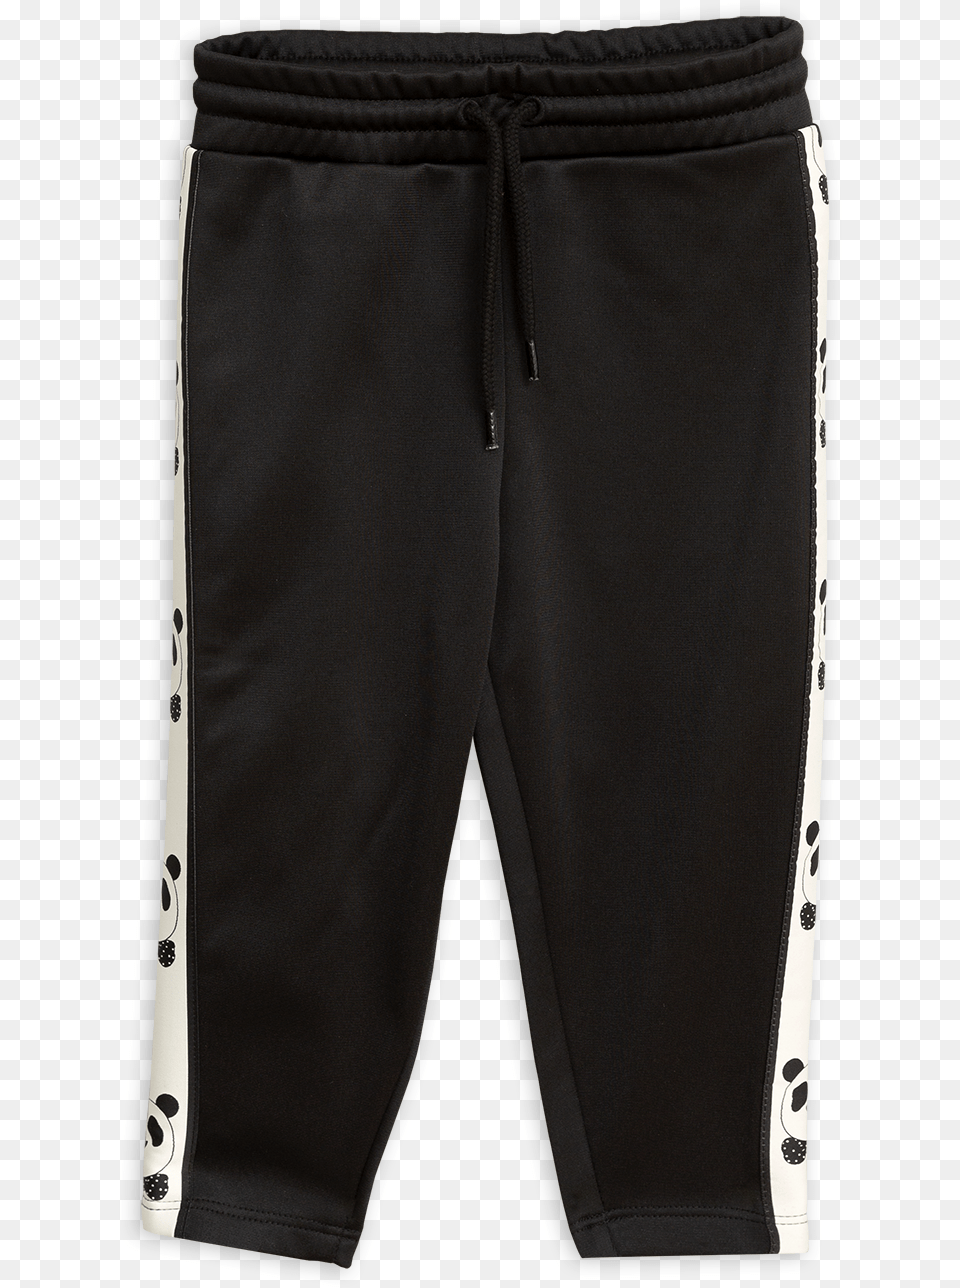 1 Mini Rodini Panda Wct Pants Black Track Pants, Clothing, Shorts, Coat, Swimming Trunks Png